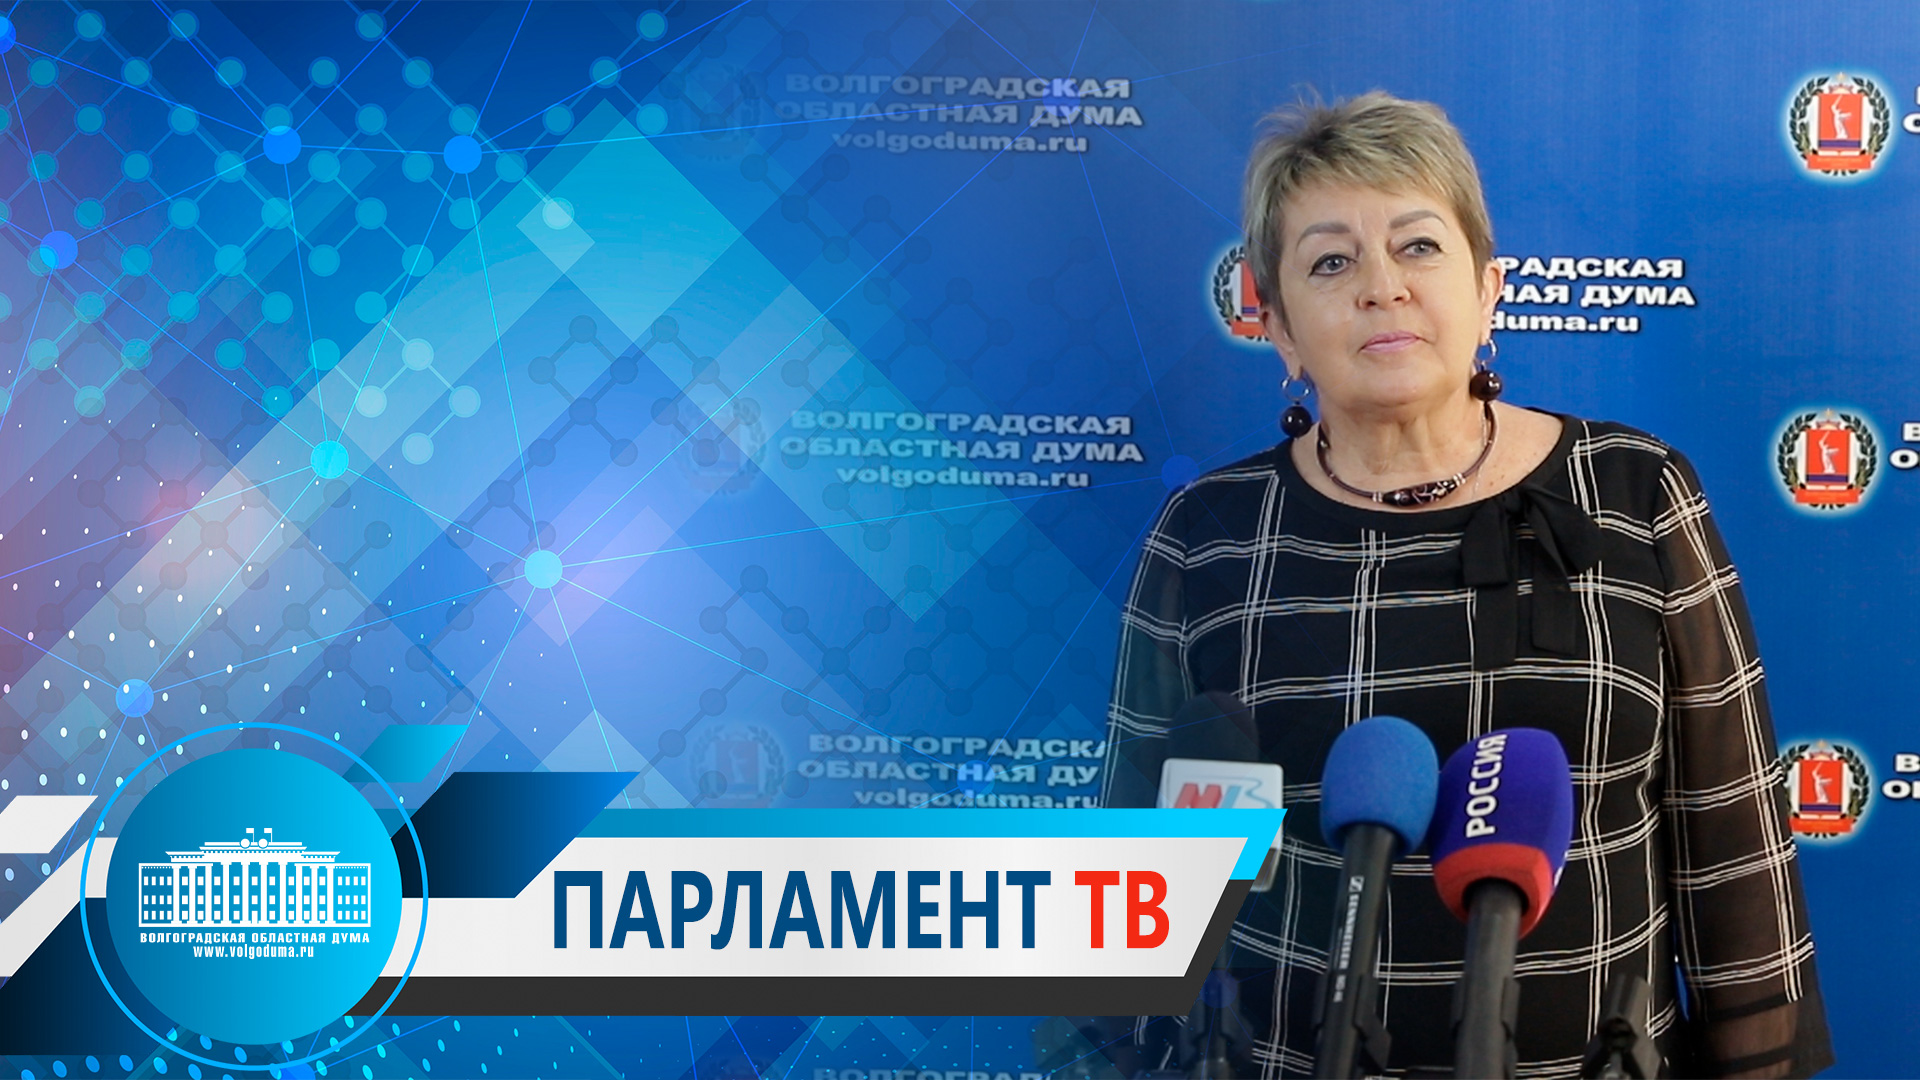 Наталья Семёнова: "Более 400 депутатов Госдумы поддерживают закон о запрете операций по смене пола"